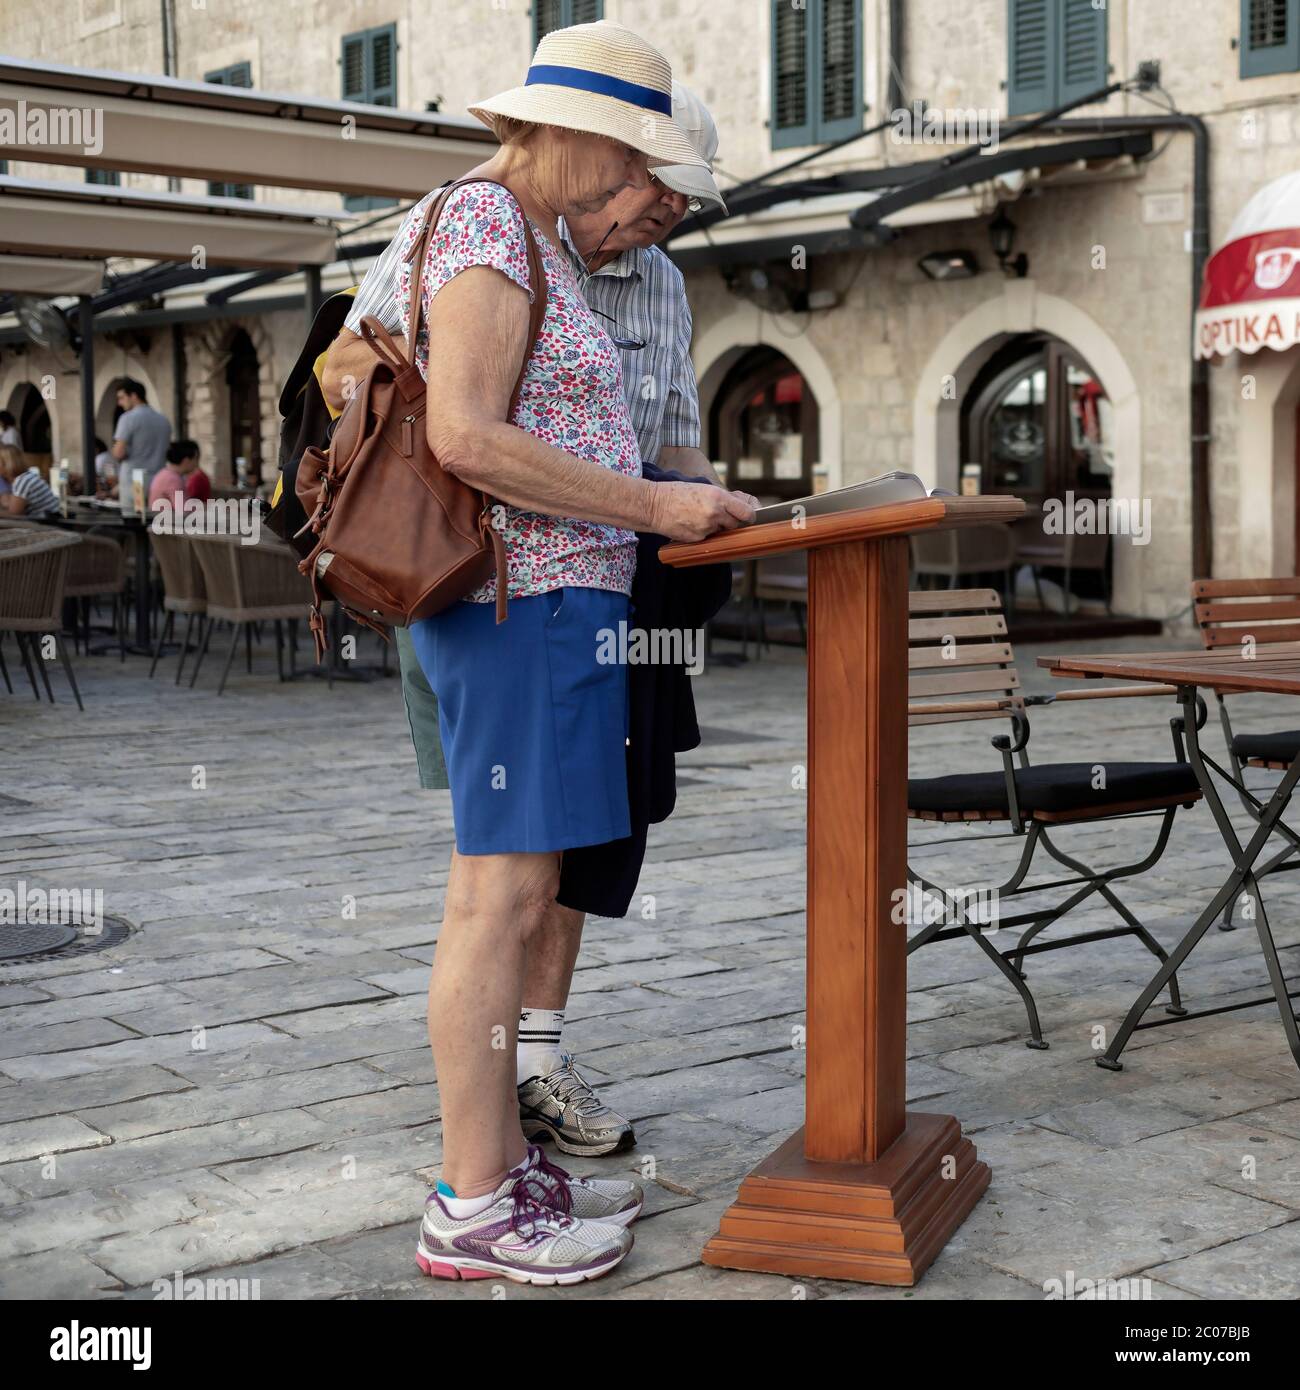 Kotor, Montenegro, 22. Sep 2019: Ein älteres Paar, das in der Altstadt das Menü des Restaurants liest Stockfoto